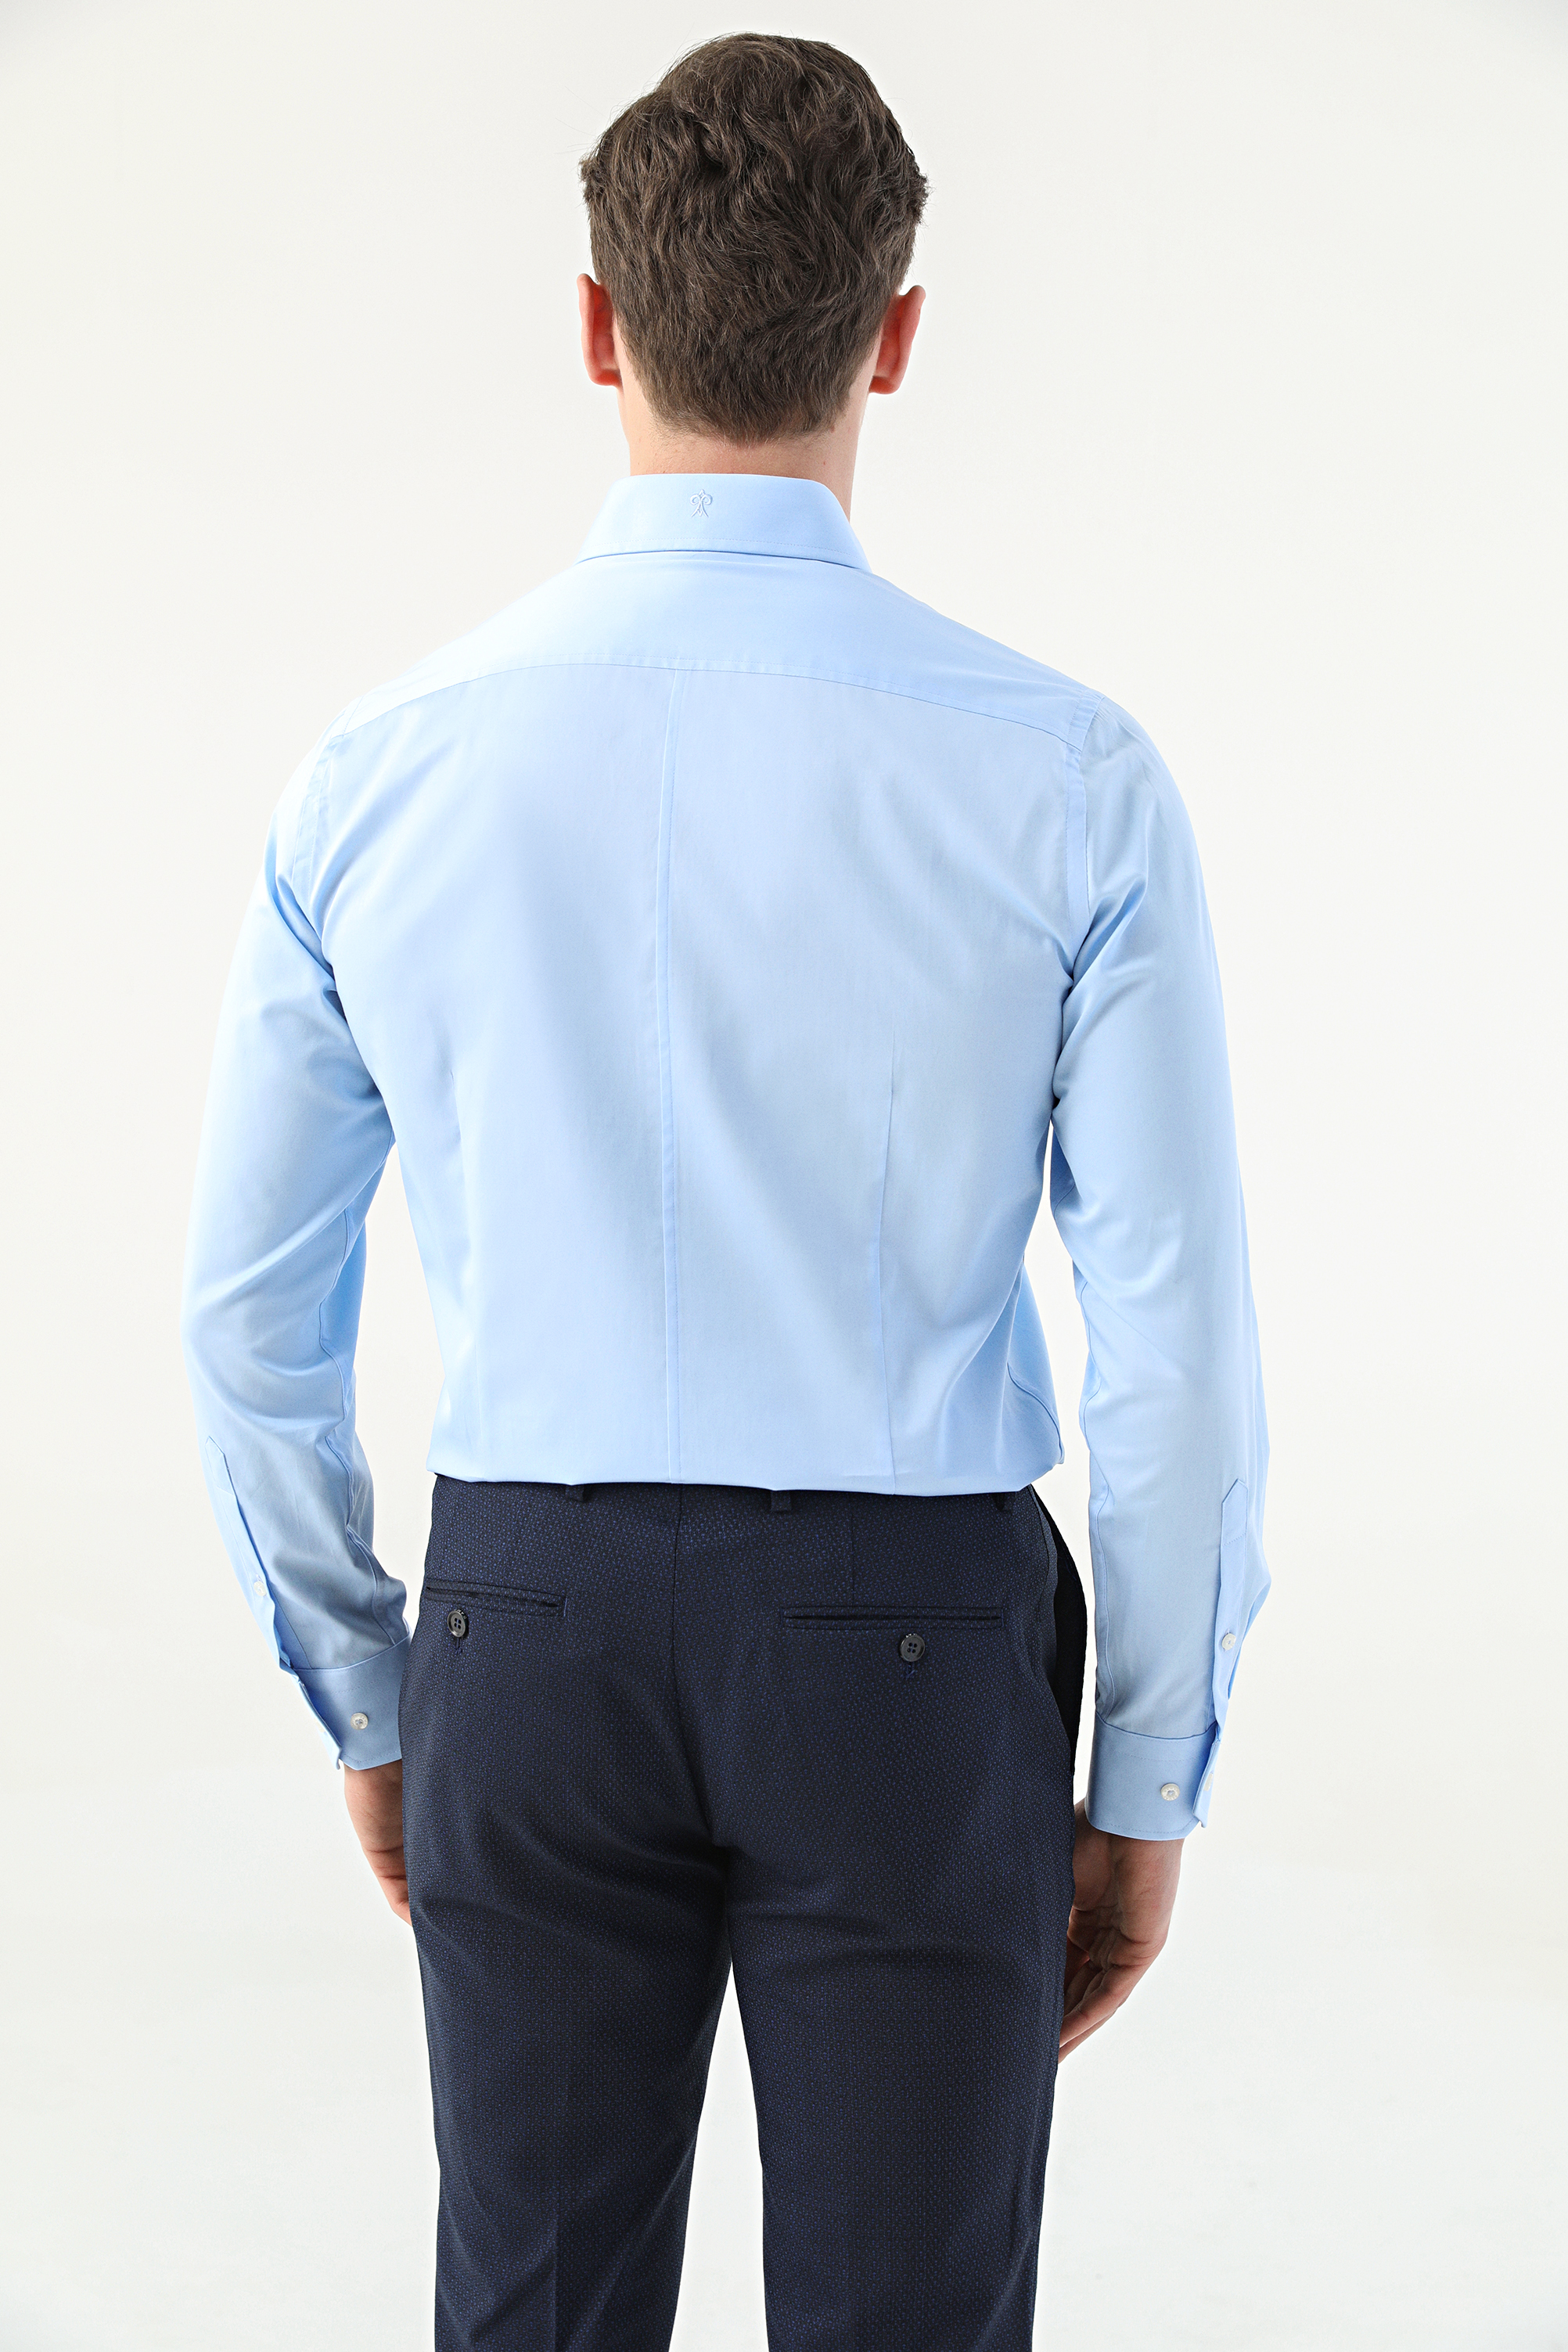 Damat Tween Damat Slim Fit Açık Mavi Düz Nano Care Gömlek. 4